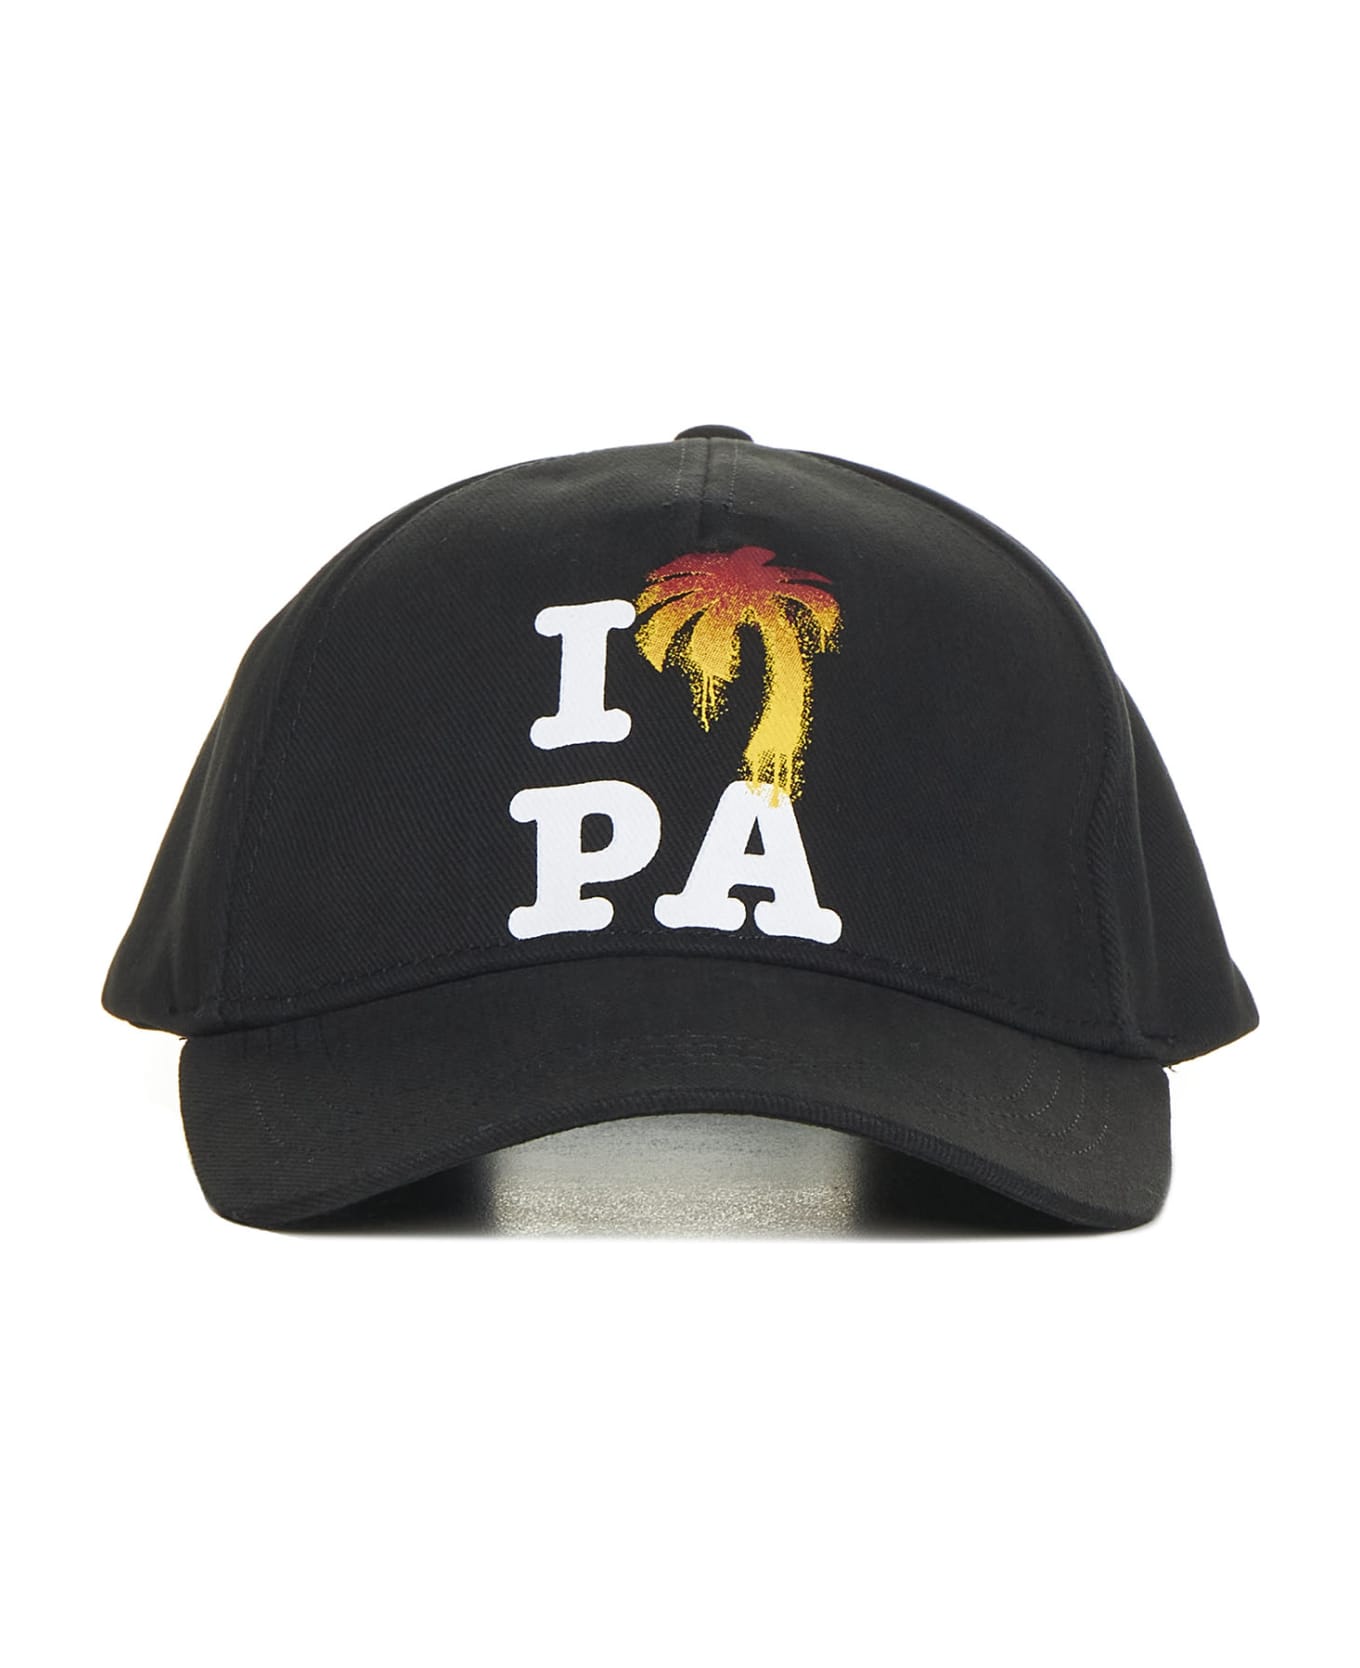 Palm Angels Hat - Black white 帽子